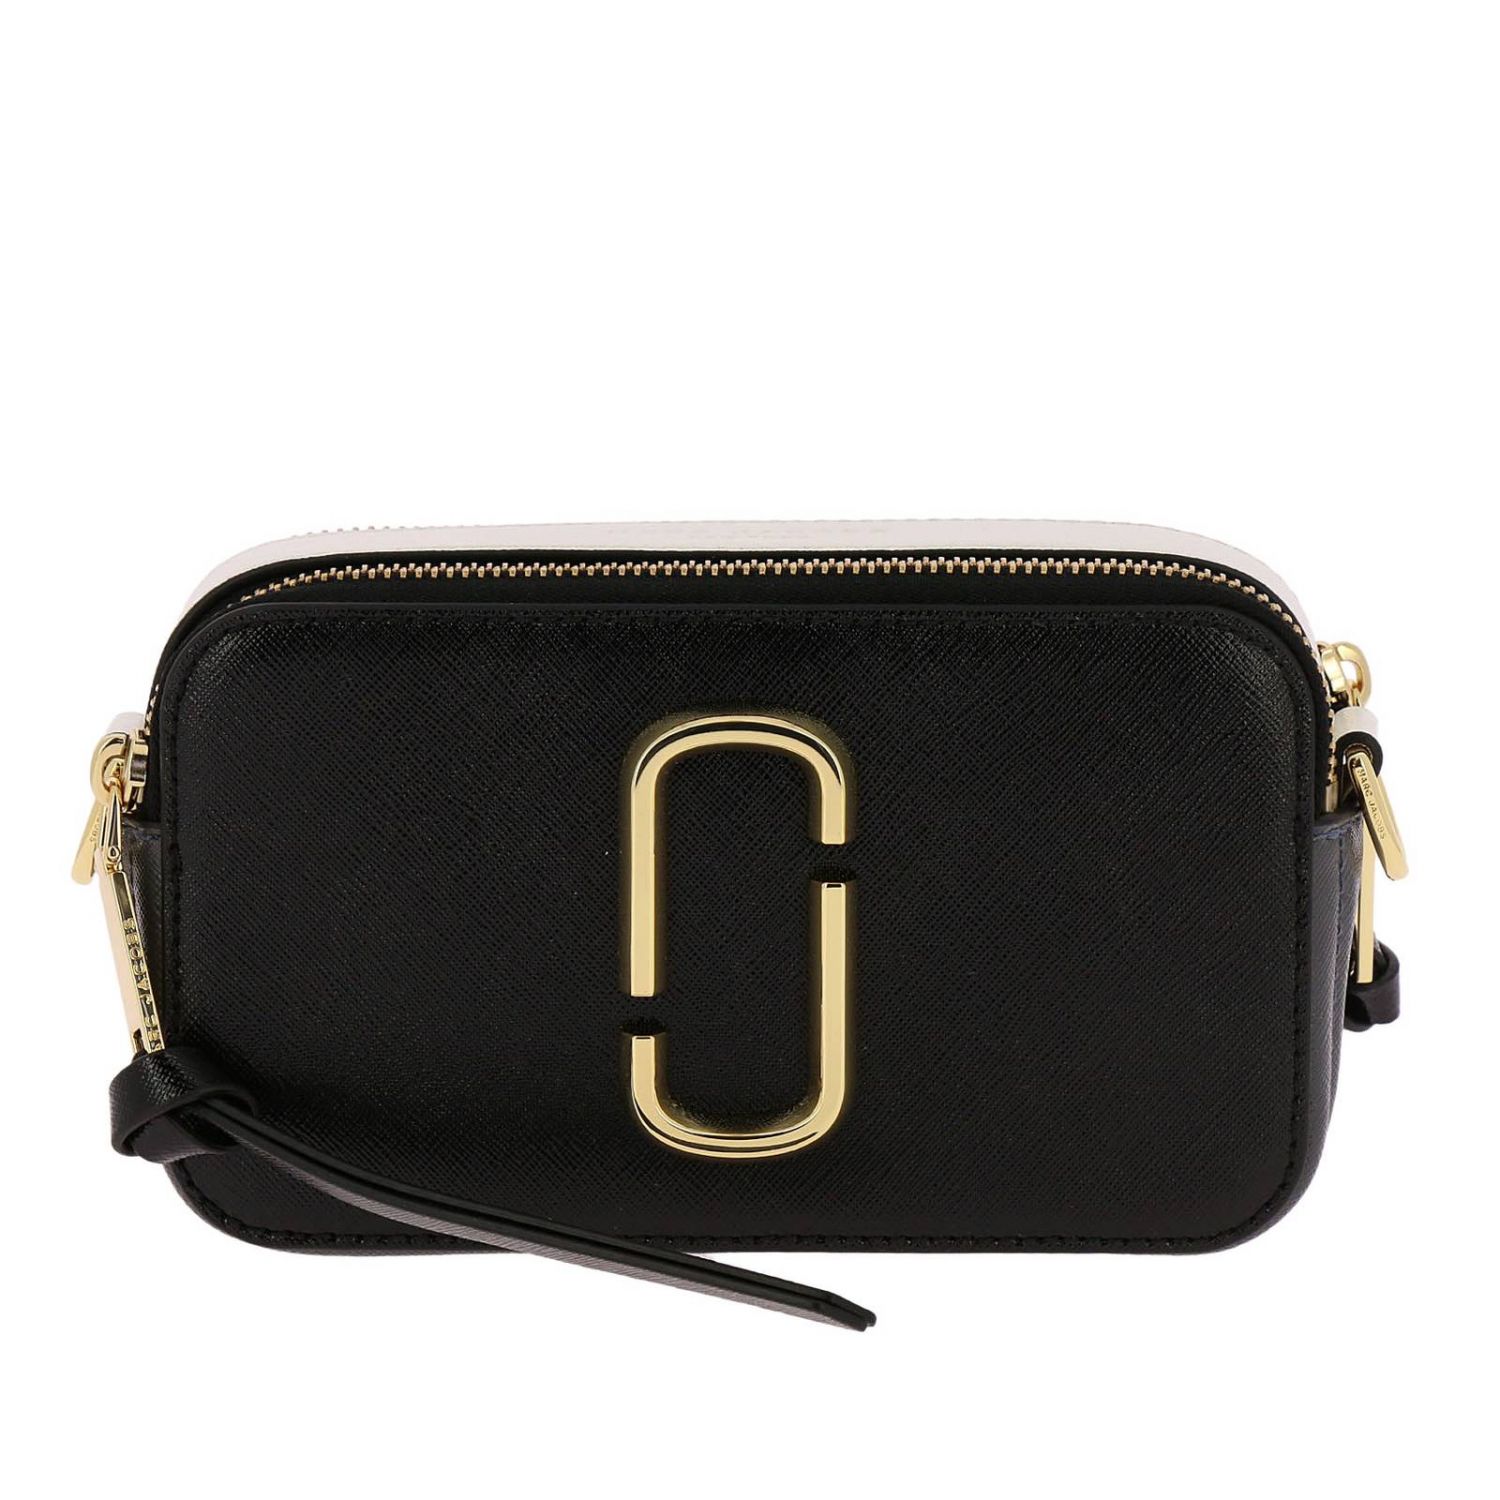 Marc Jacobs Outlet: belt bag for women - Black | Marc Jacobs belt bag ...